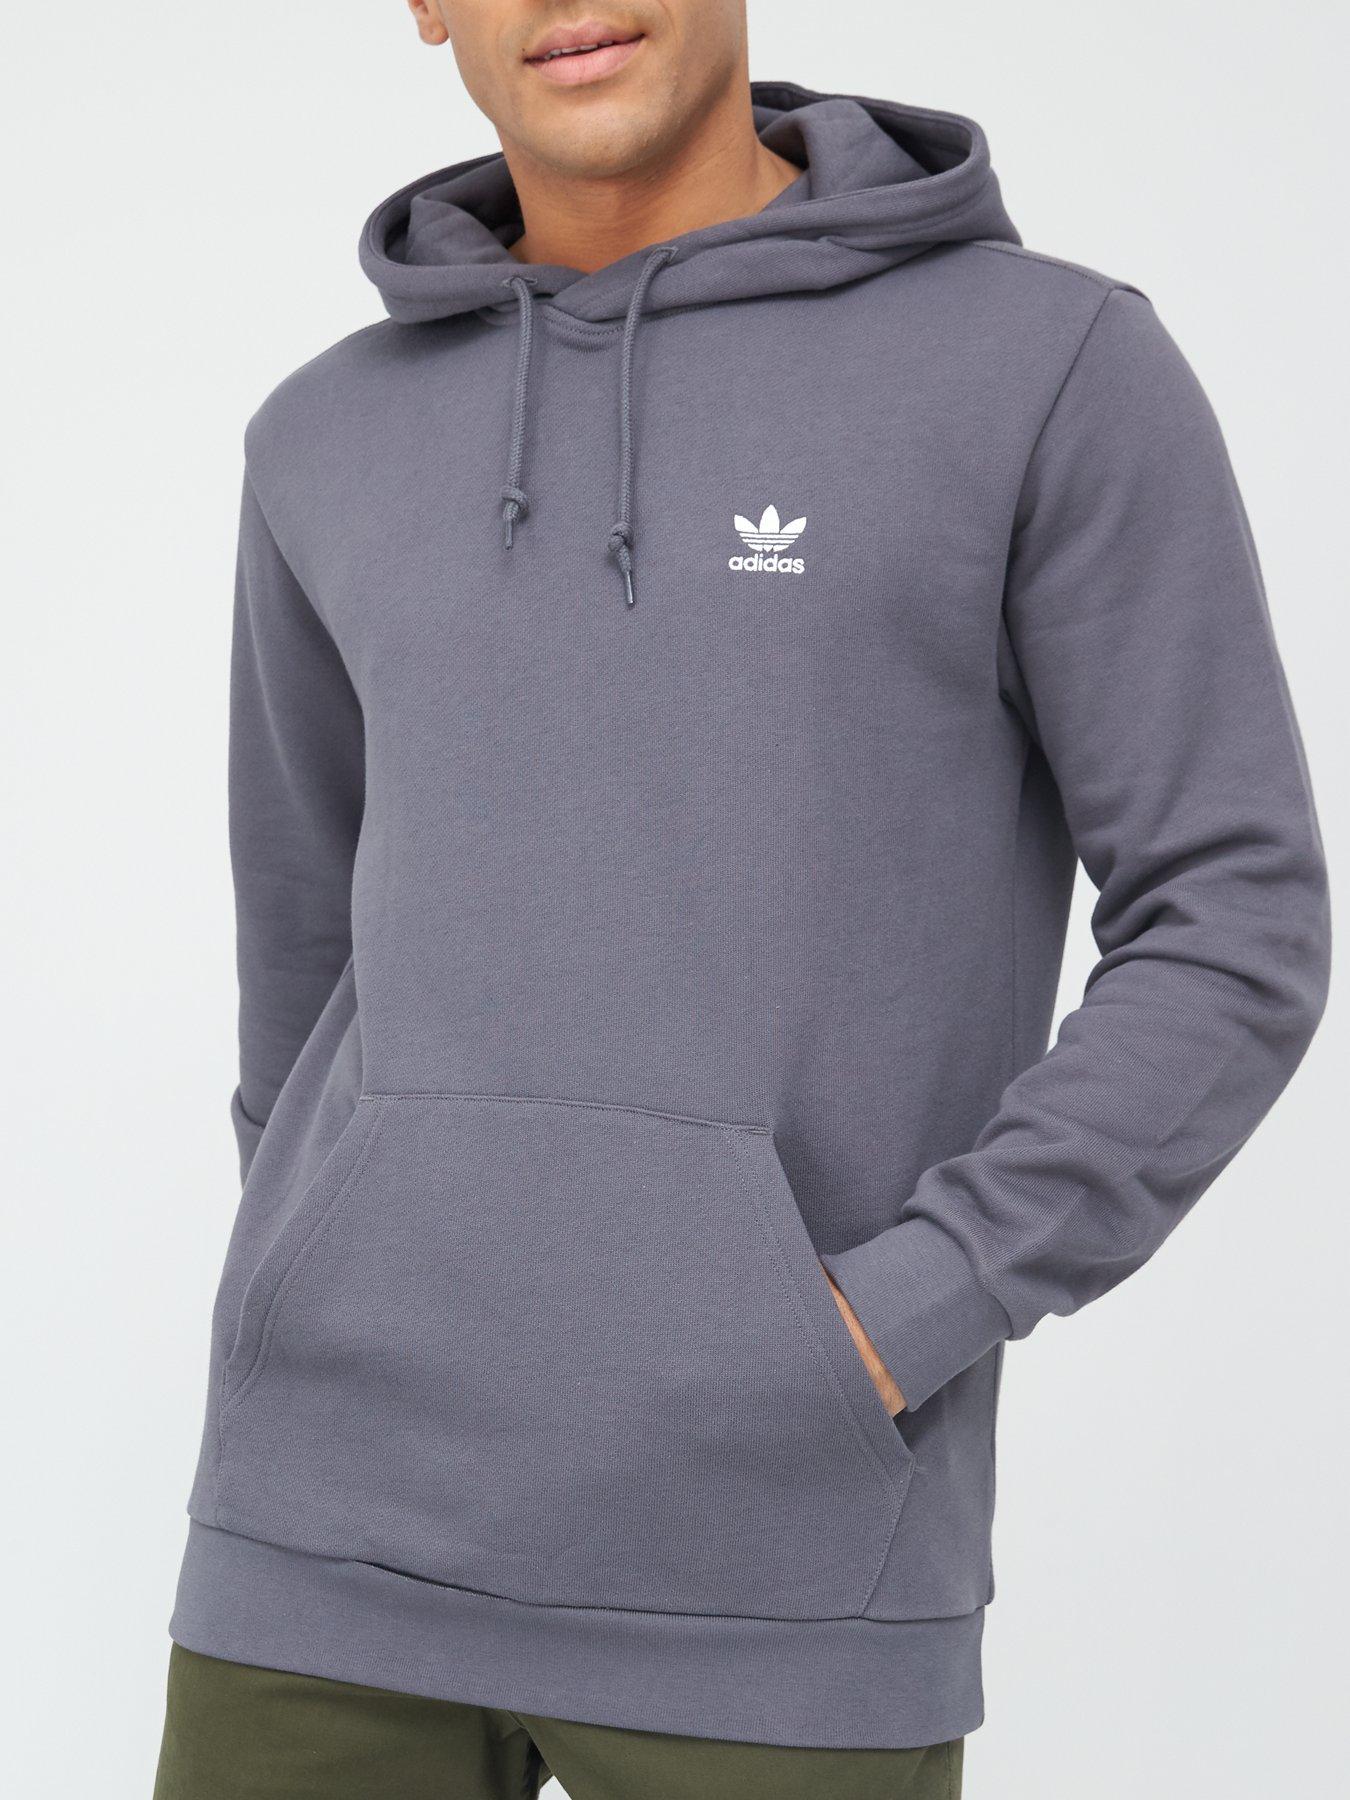 Adidas | Hoodies \u0026 sweatshirts | Mens 